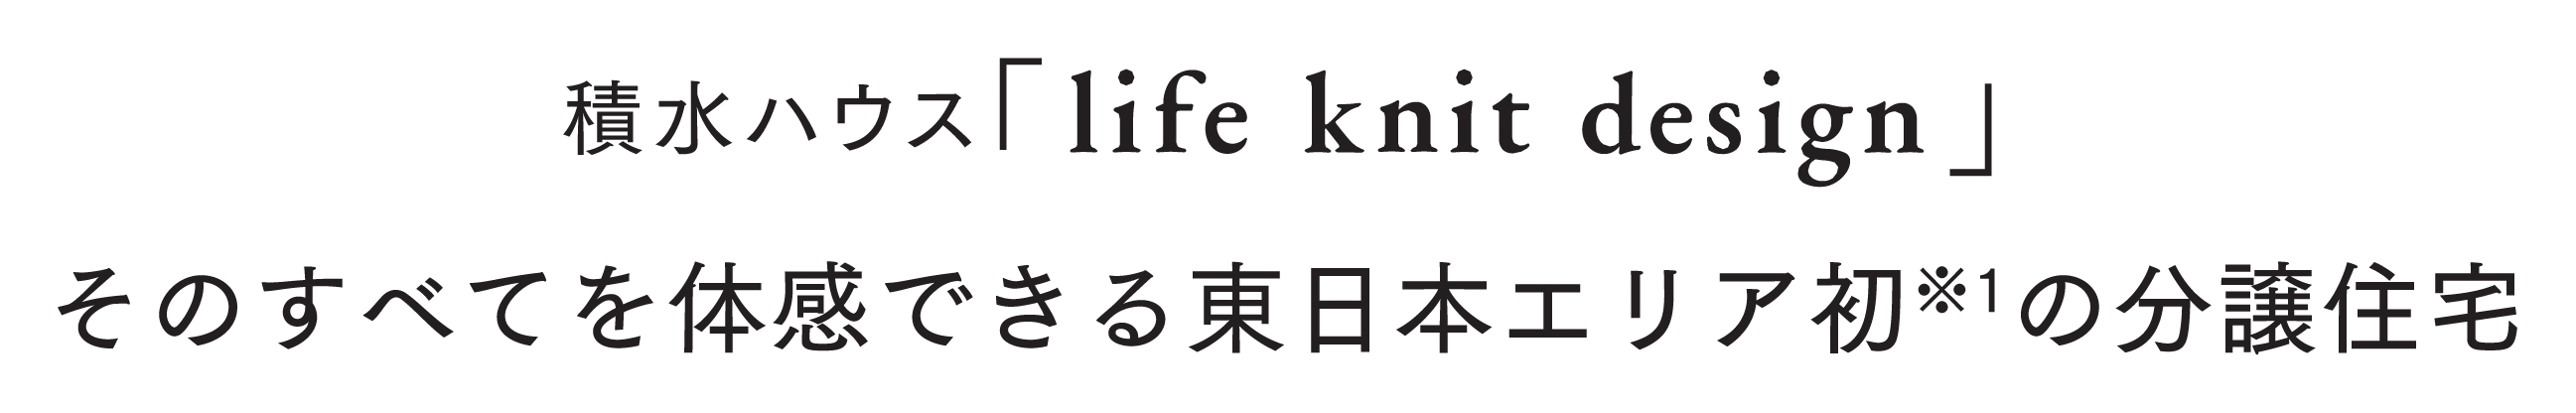 積水ハウス 東日本エリア初※「life knit design」分譲住宅はじまる